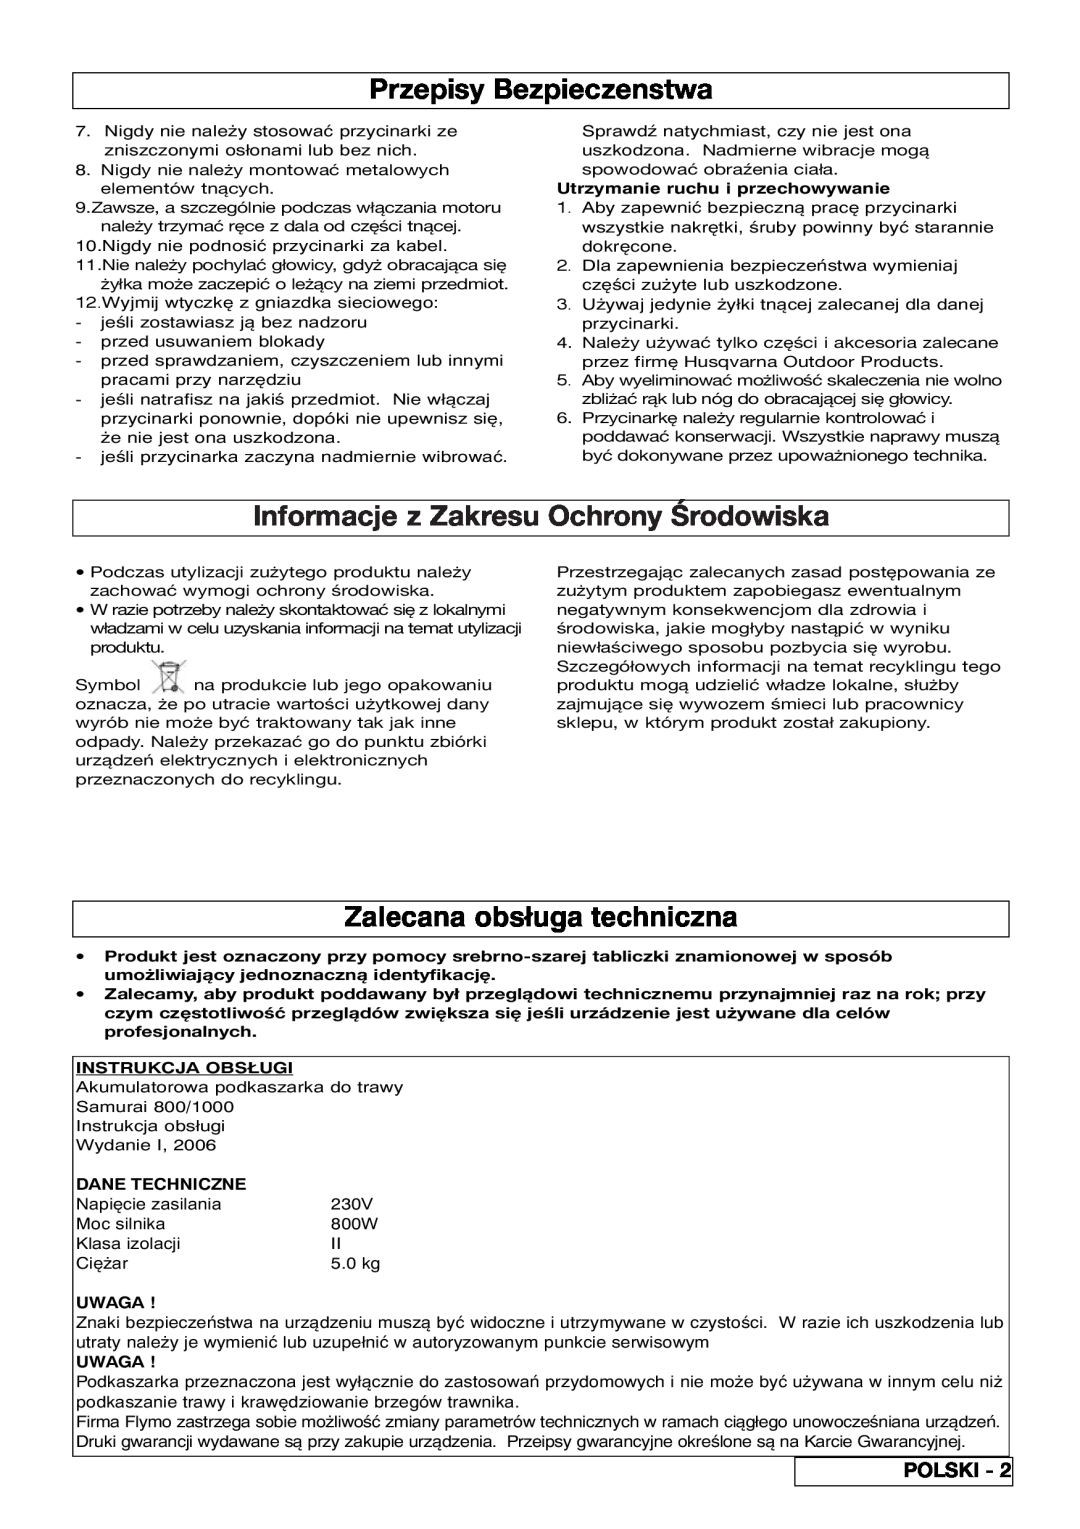 Flymo 800/1000 manual Przepisy Bezpieczenstwa, Informacje z Zakresu Ochrony Środowiska, Zalecana obsługa techniczna, Polski 